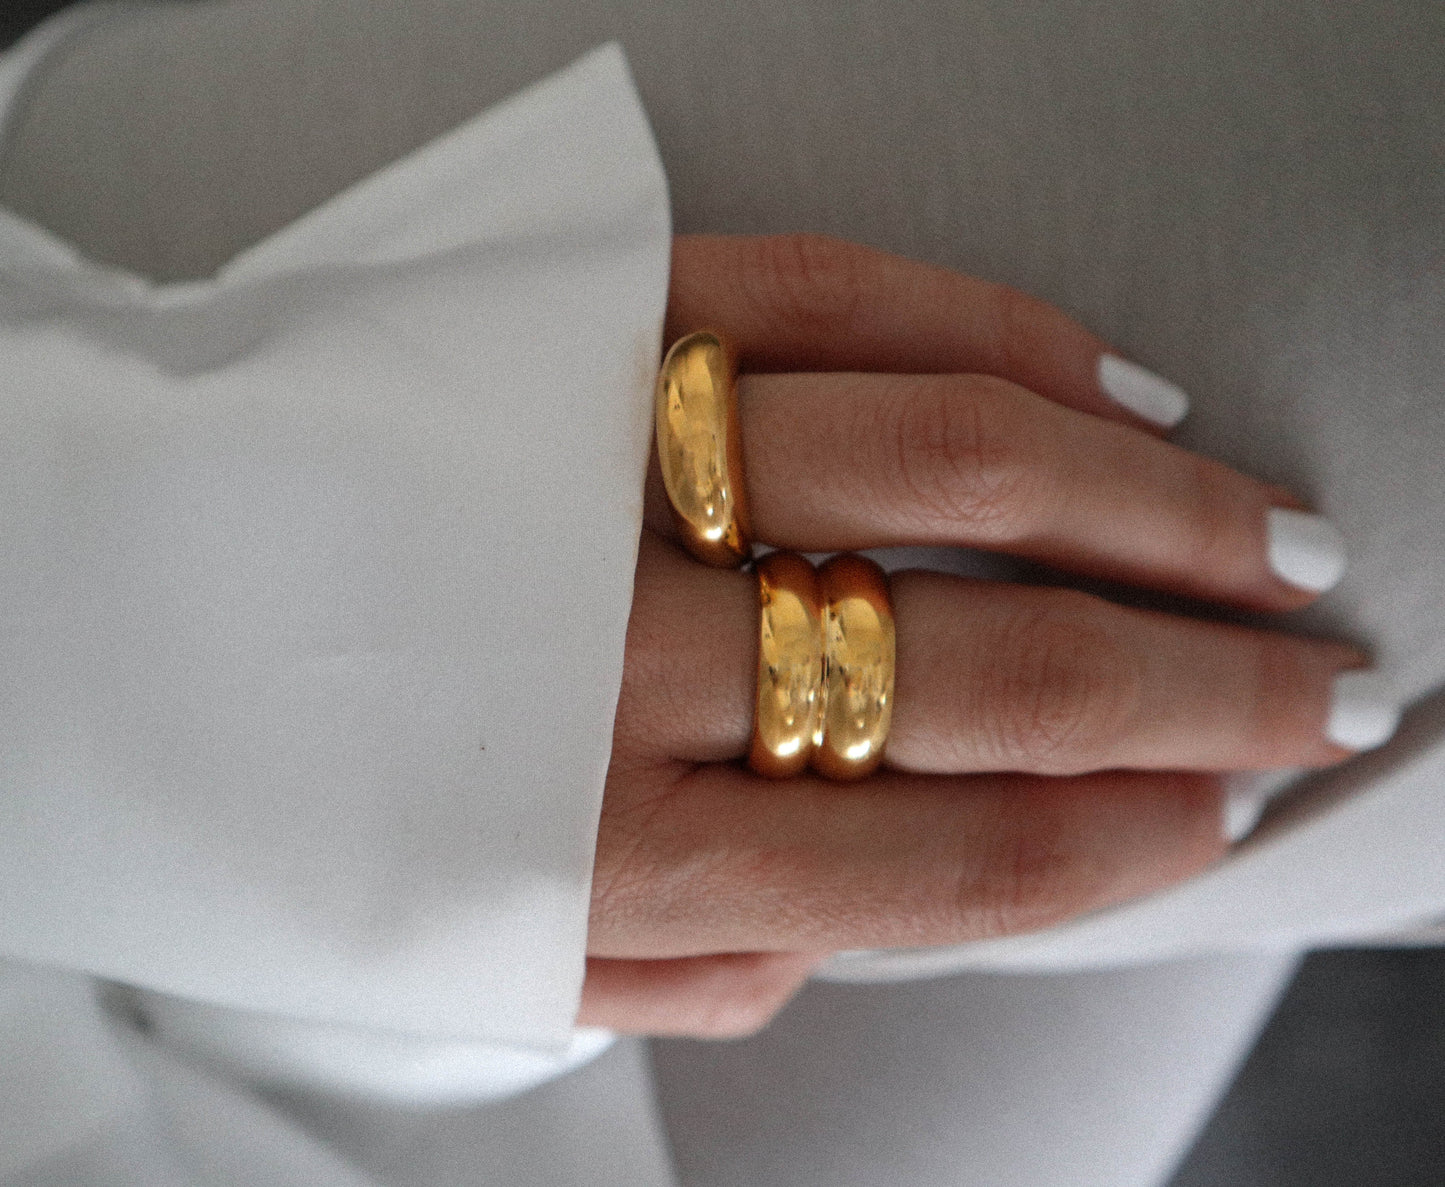 Lovely gold ring